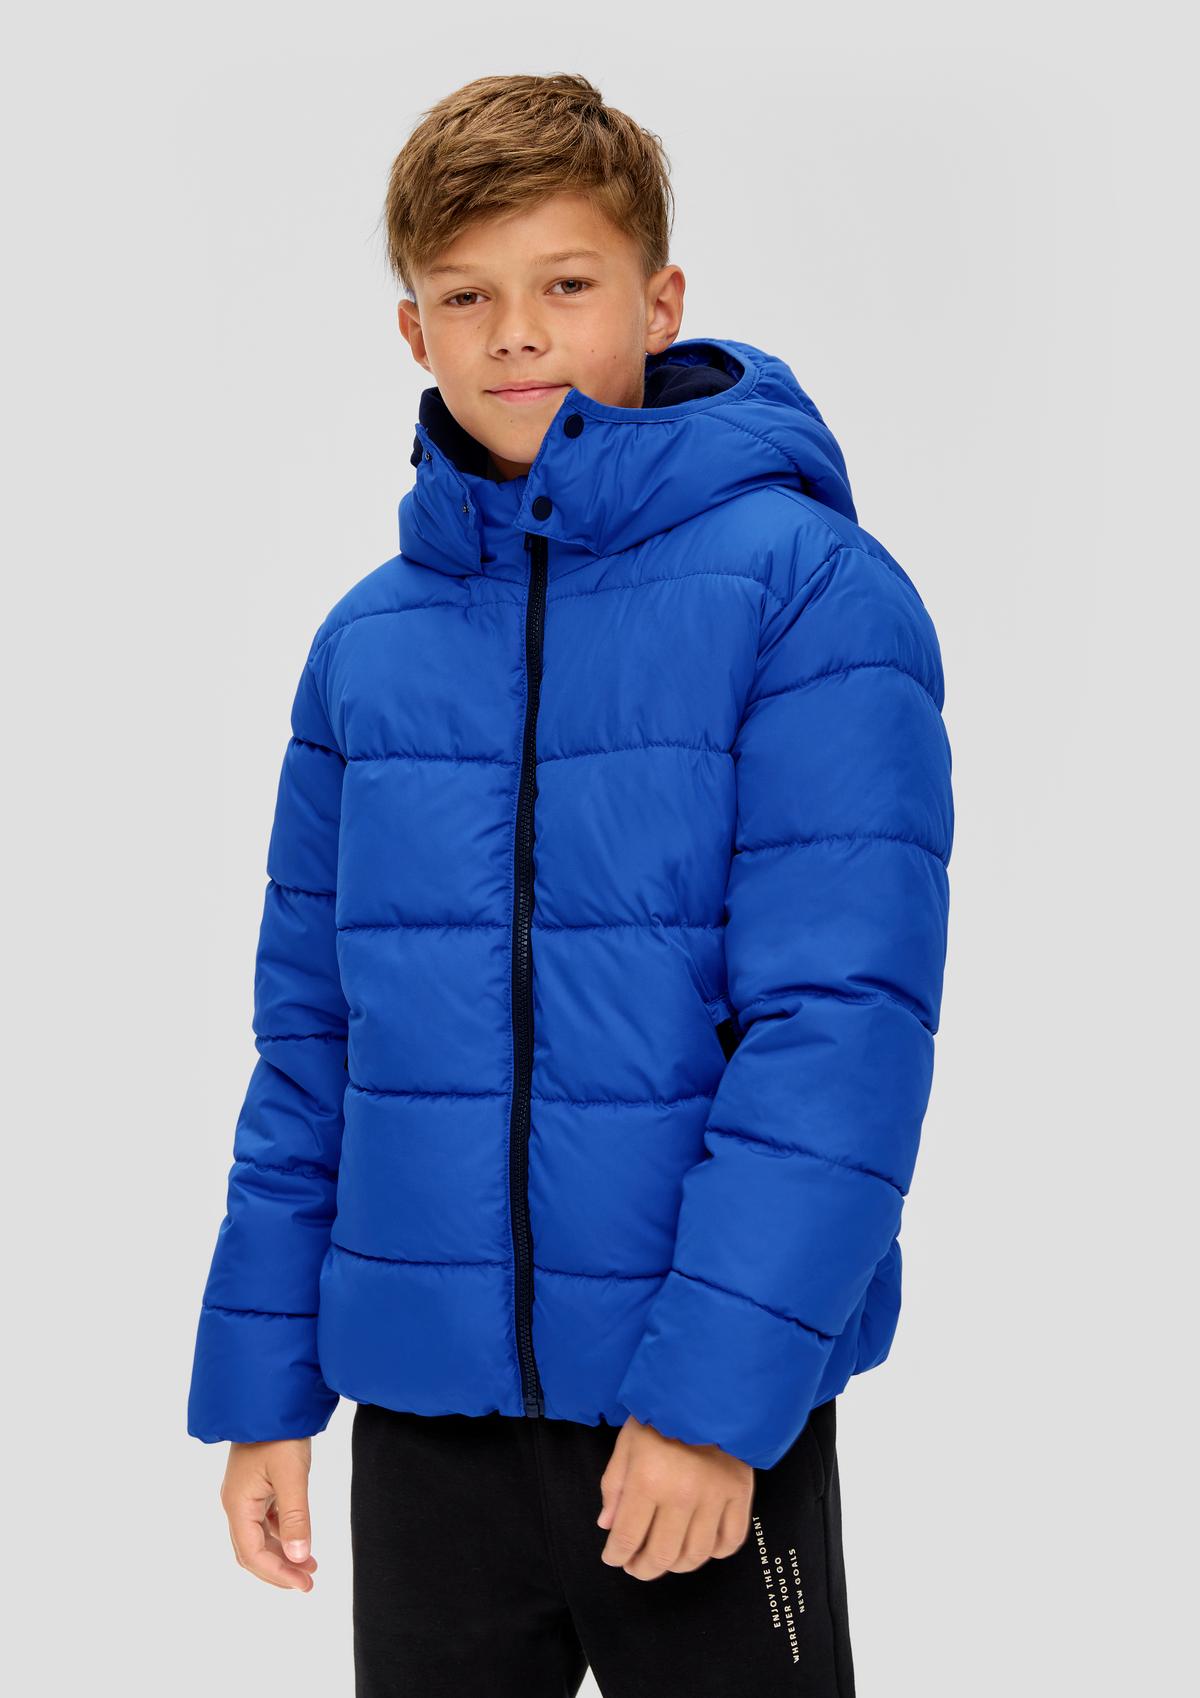 Jacken für Jungen bequem online kaufen